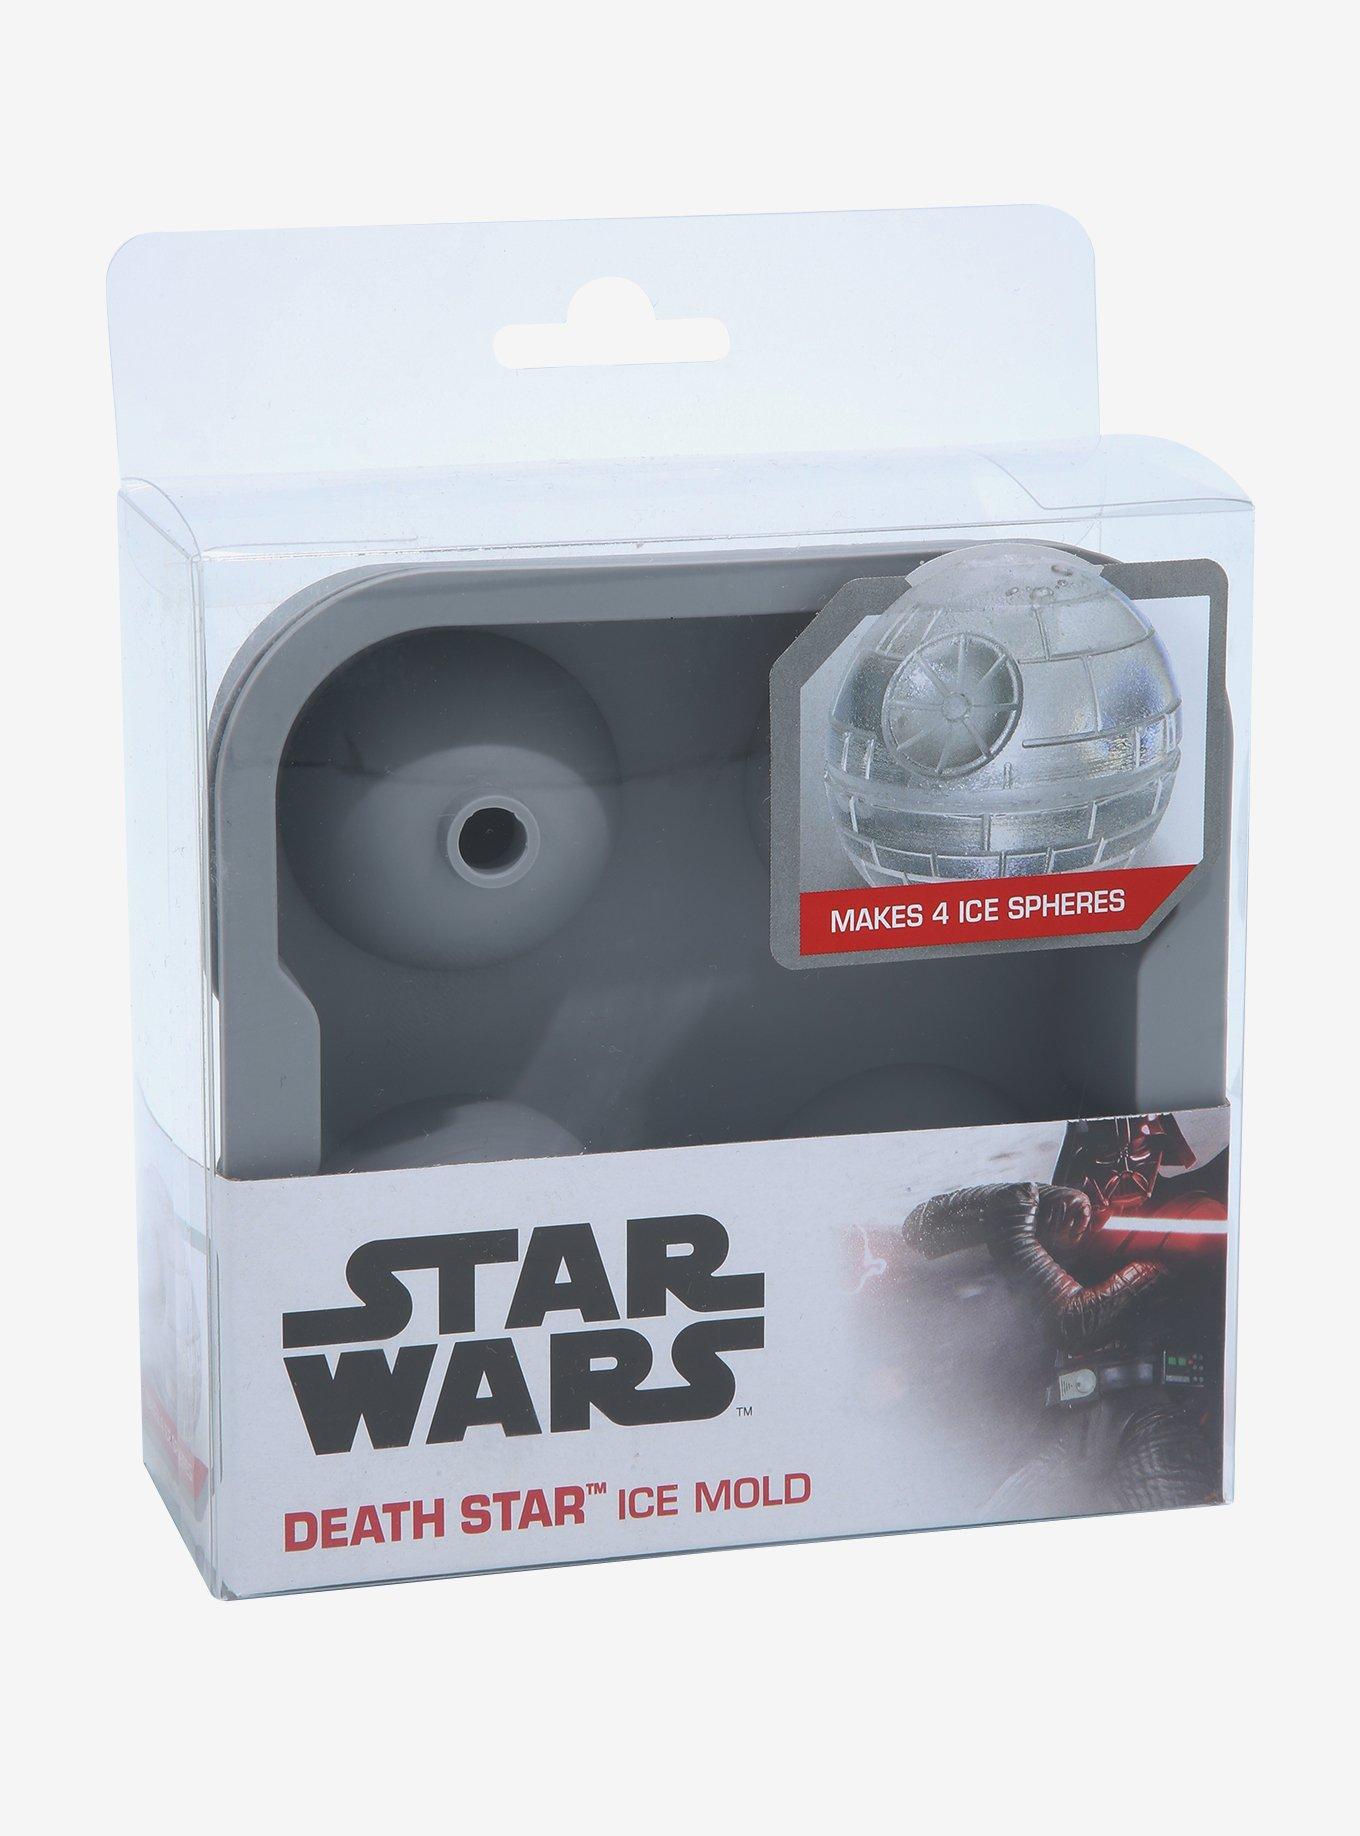 Death Star ice cube mold : r/ExpectationVsReality